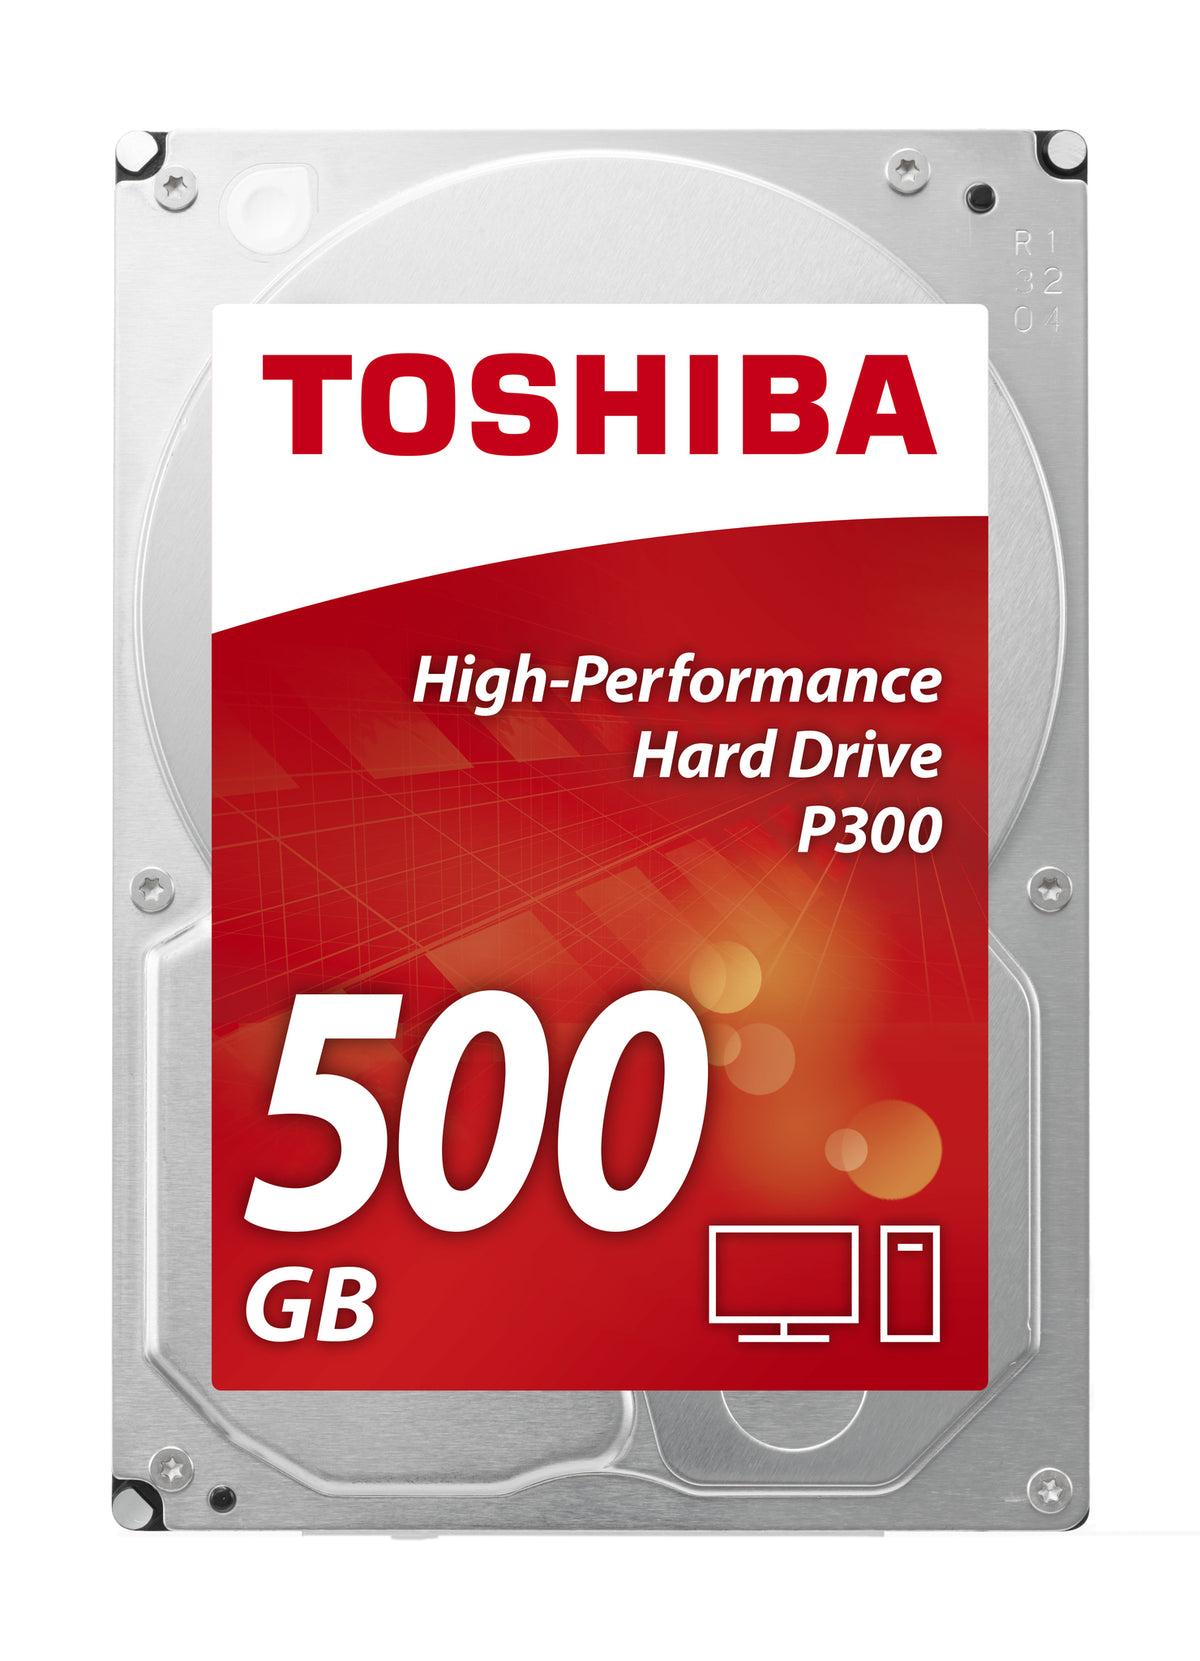 Toshiba internal hard drive P300 500GB 3.5" Serial ATA III